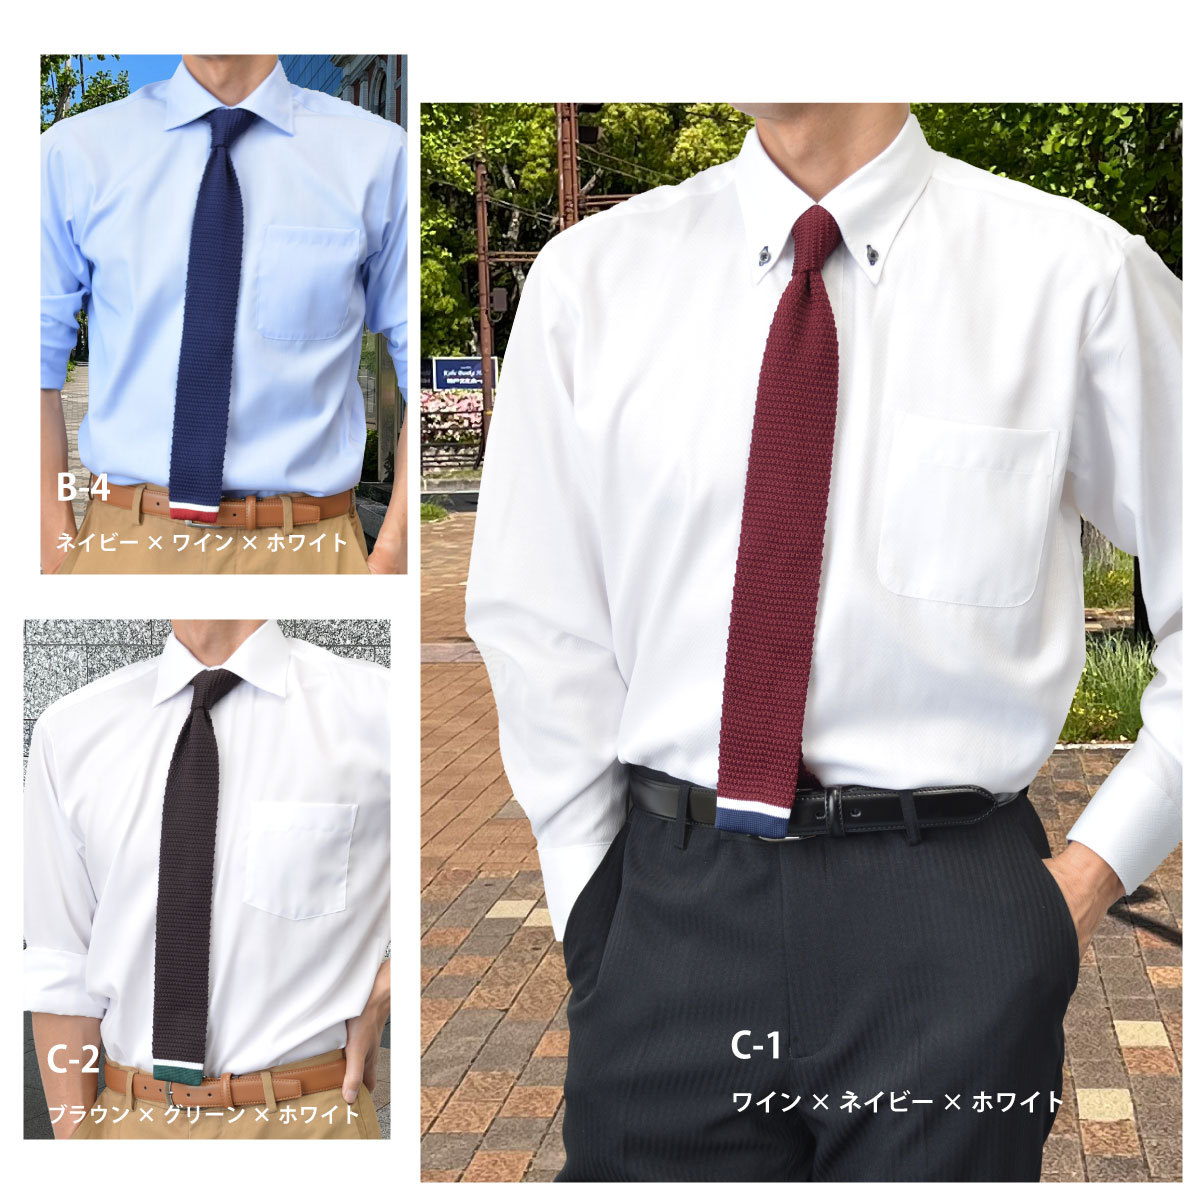  вязаный галстук одноцветный точка окантовка галстук [24 вид ] бизнес casual модный подарок подарок бесплатная доставка knit